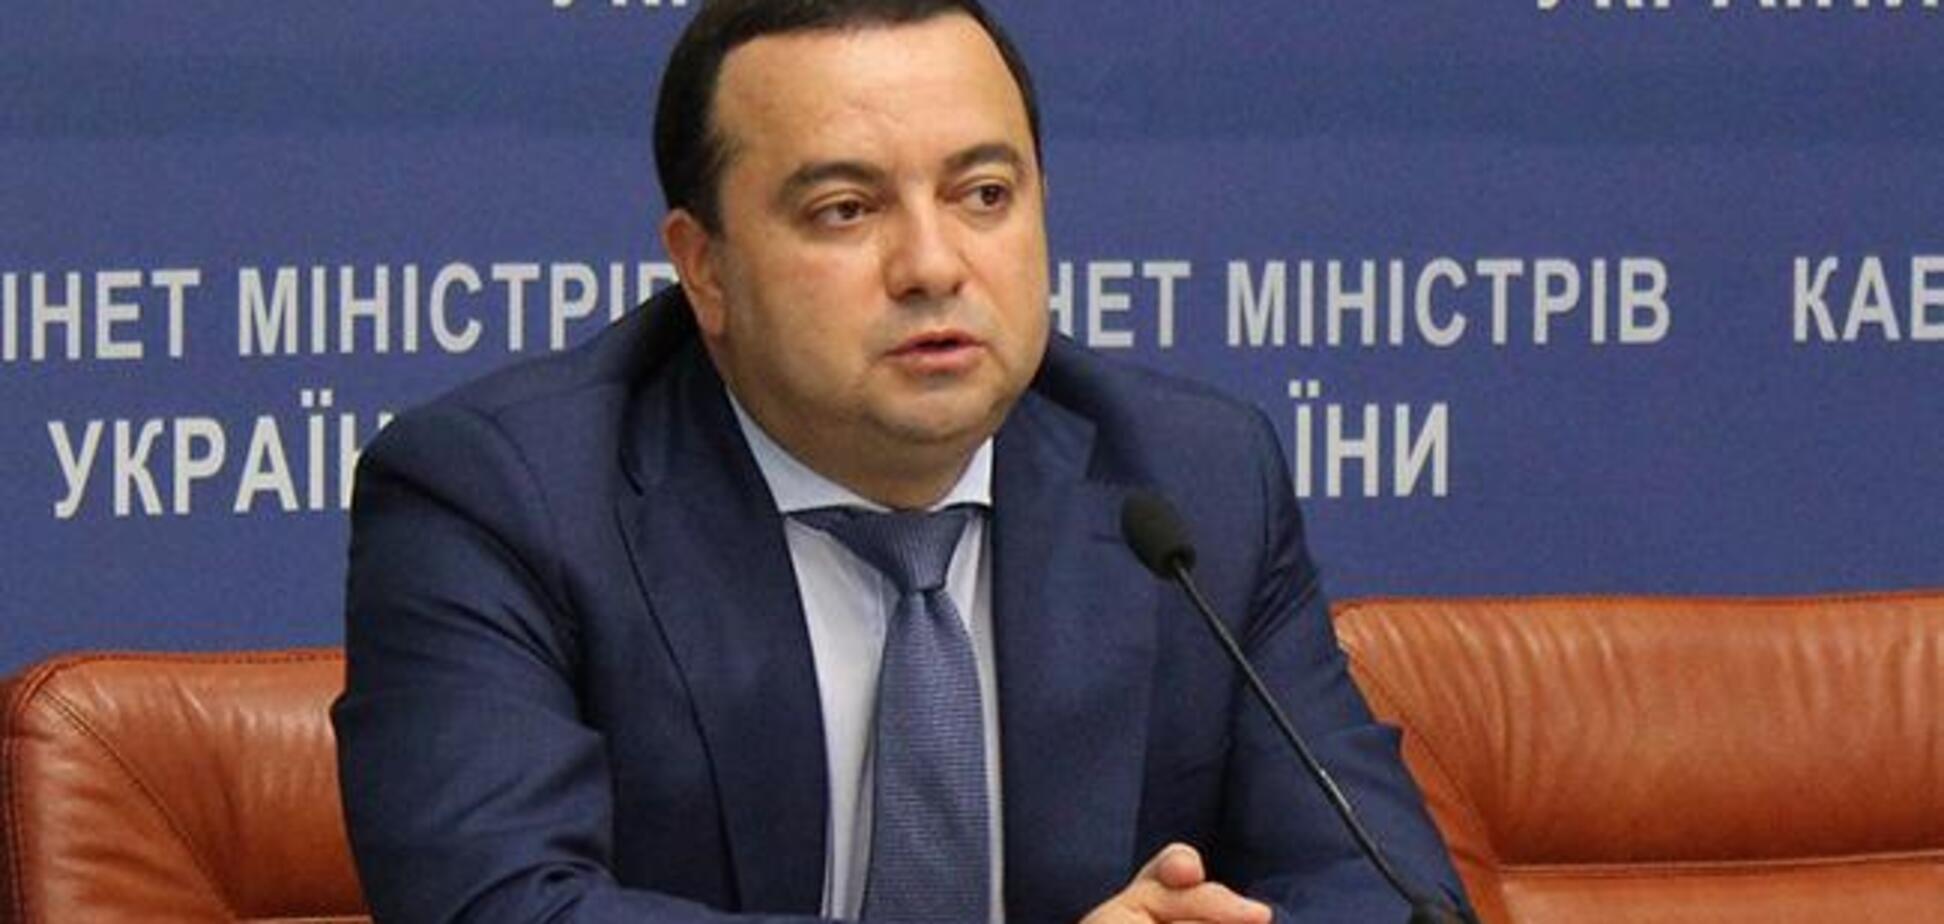 Скандал с главой ГАСИ: Кудрявцев считает обвинения манипуляциями противников реформ